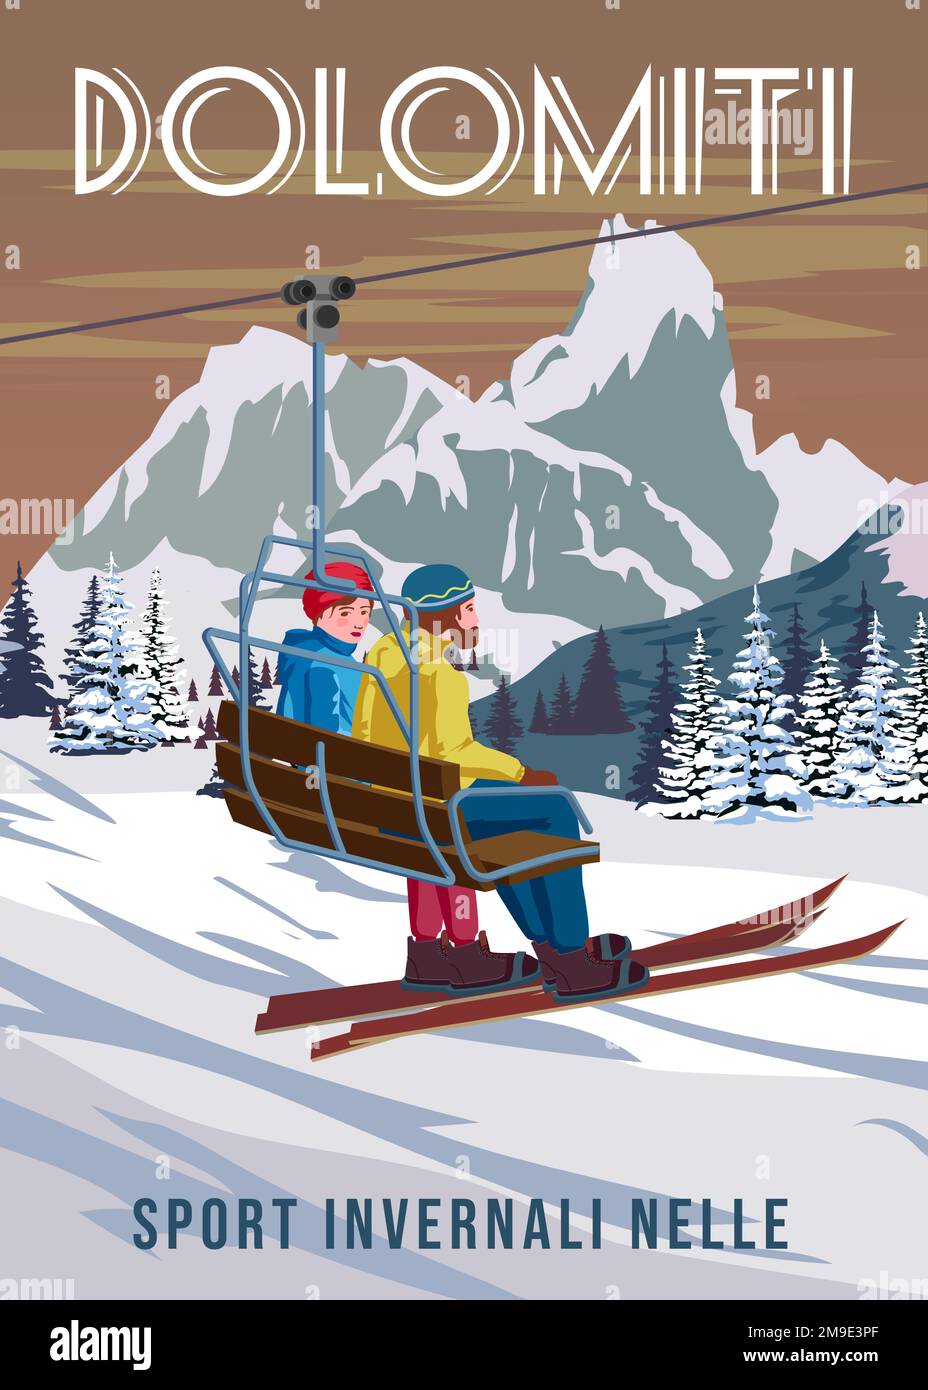 Affiche de voyage vintage Station de ski Val Gardena. Carte de voyage paysage d'hiver en Italie Illustration de Vecteur